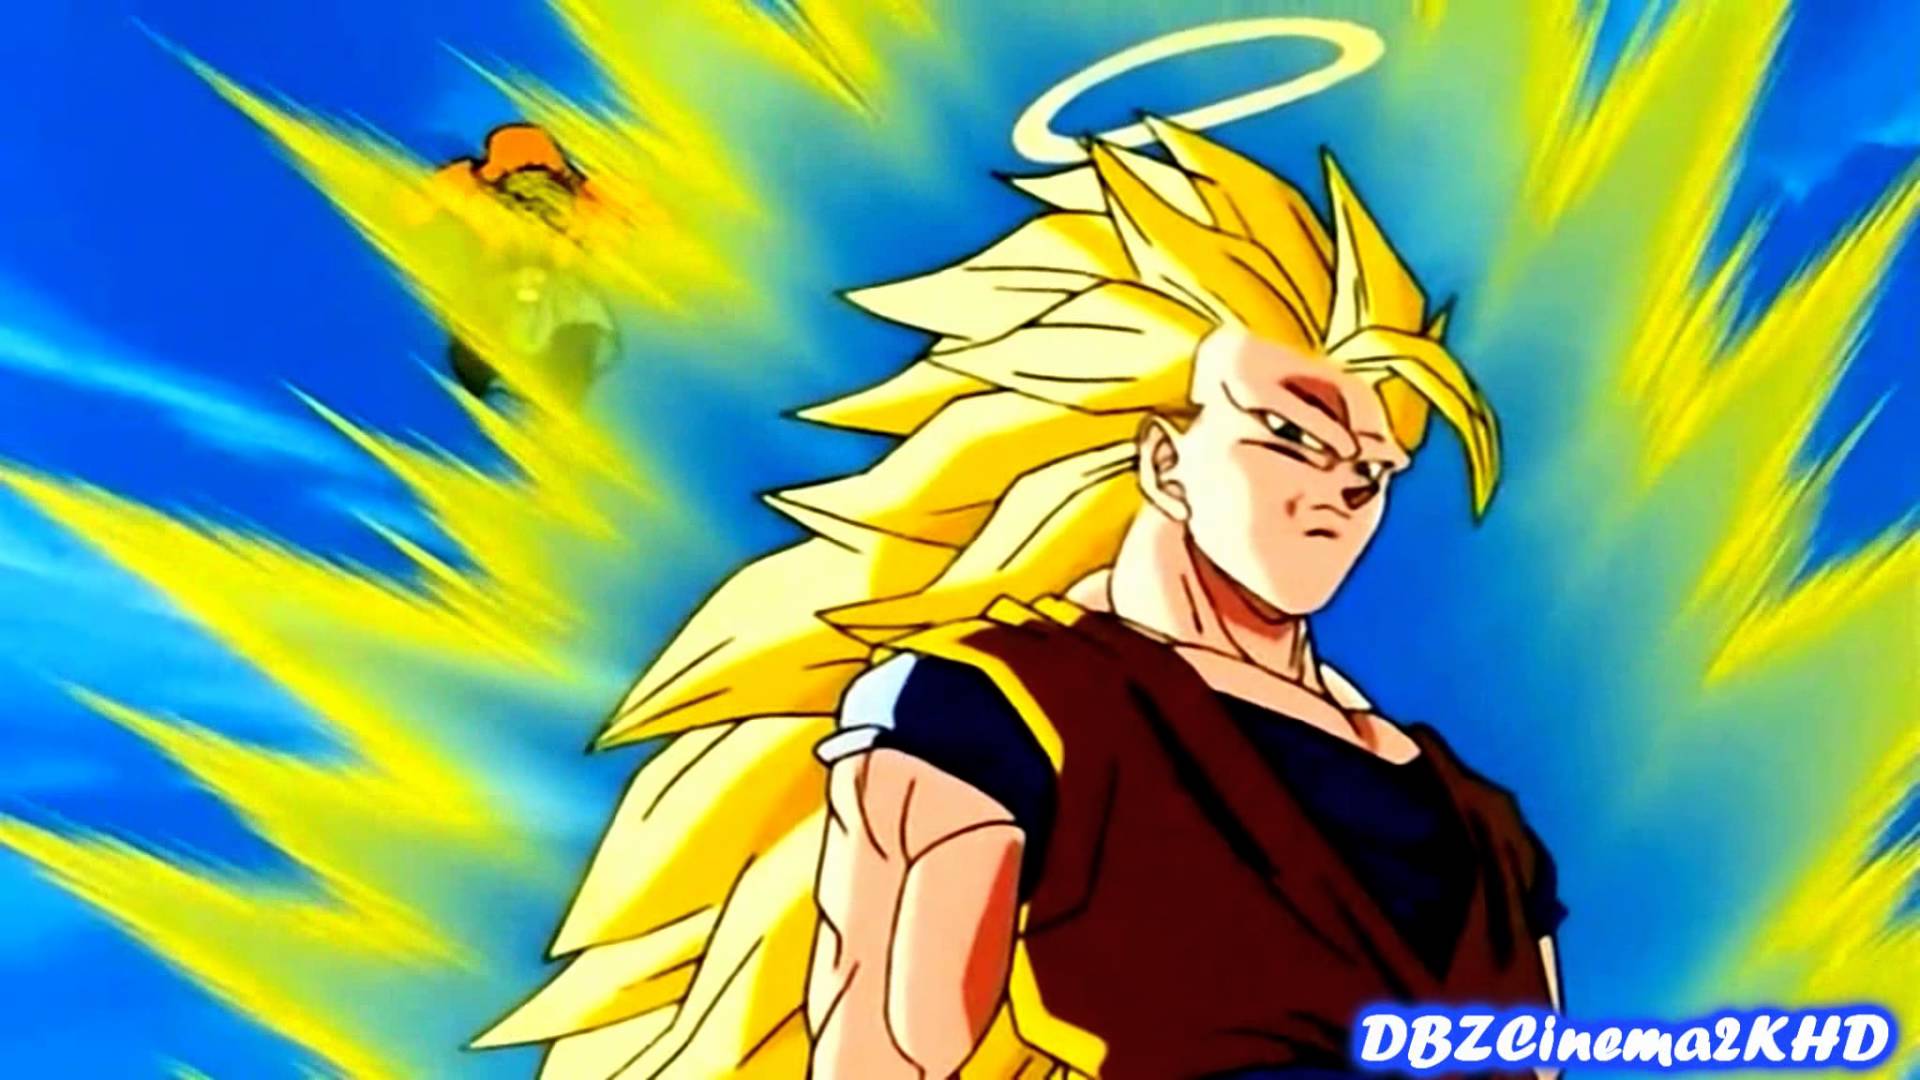 Goku image *Goku* HD wallpaper and background photo